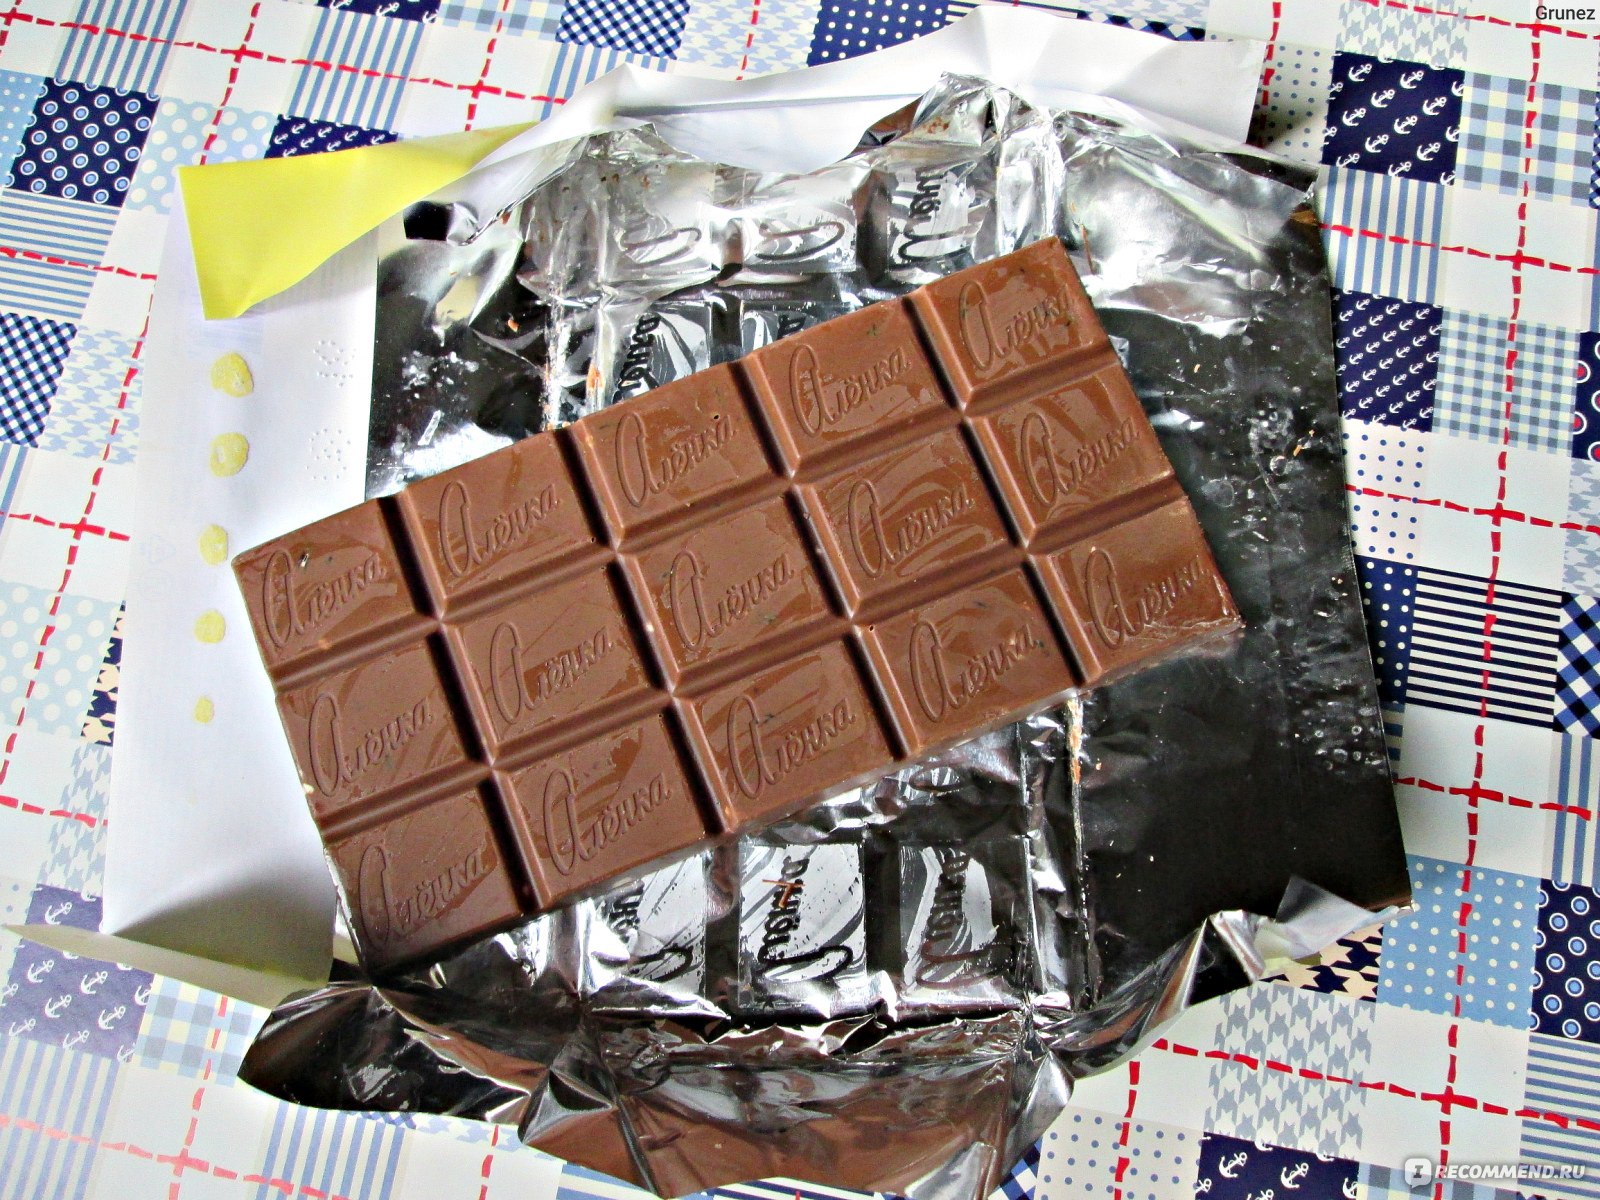 Обычную шоколадку. Шоколадки. Плитка шоколада в обертке. Три шоколадки. Шоколадка с фотографией.